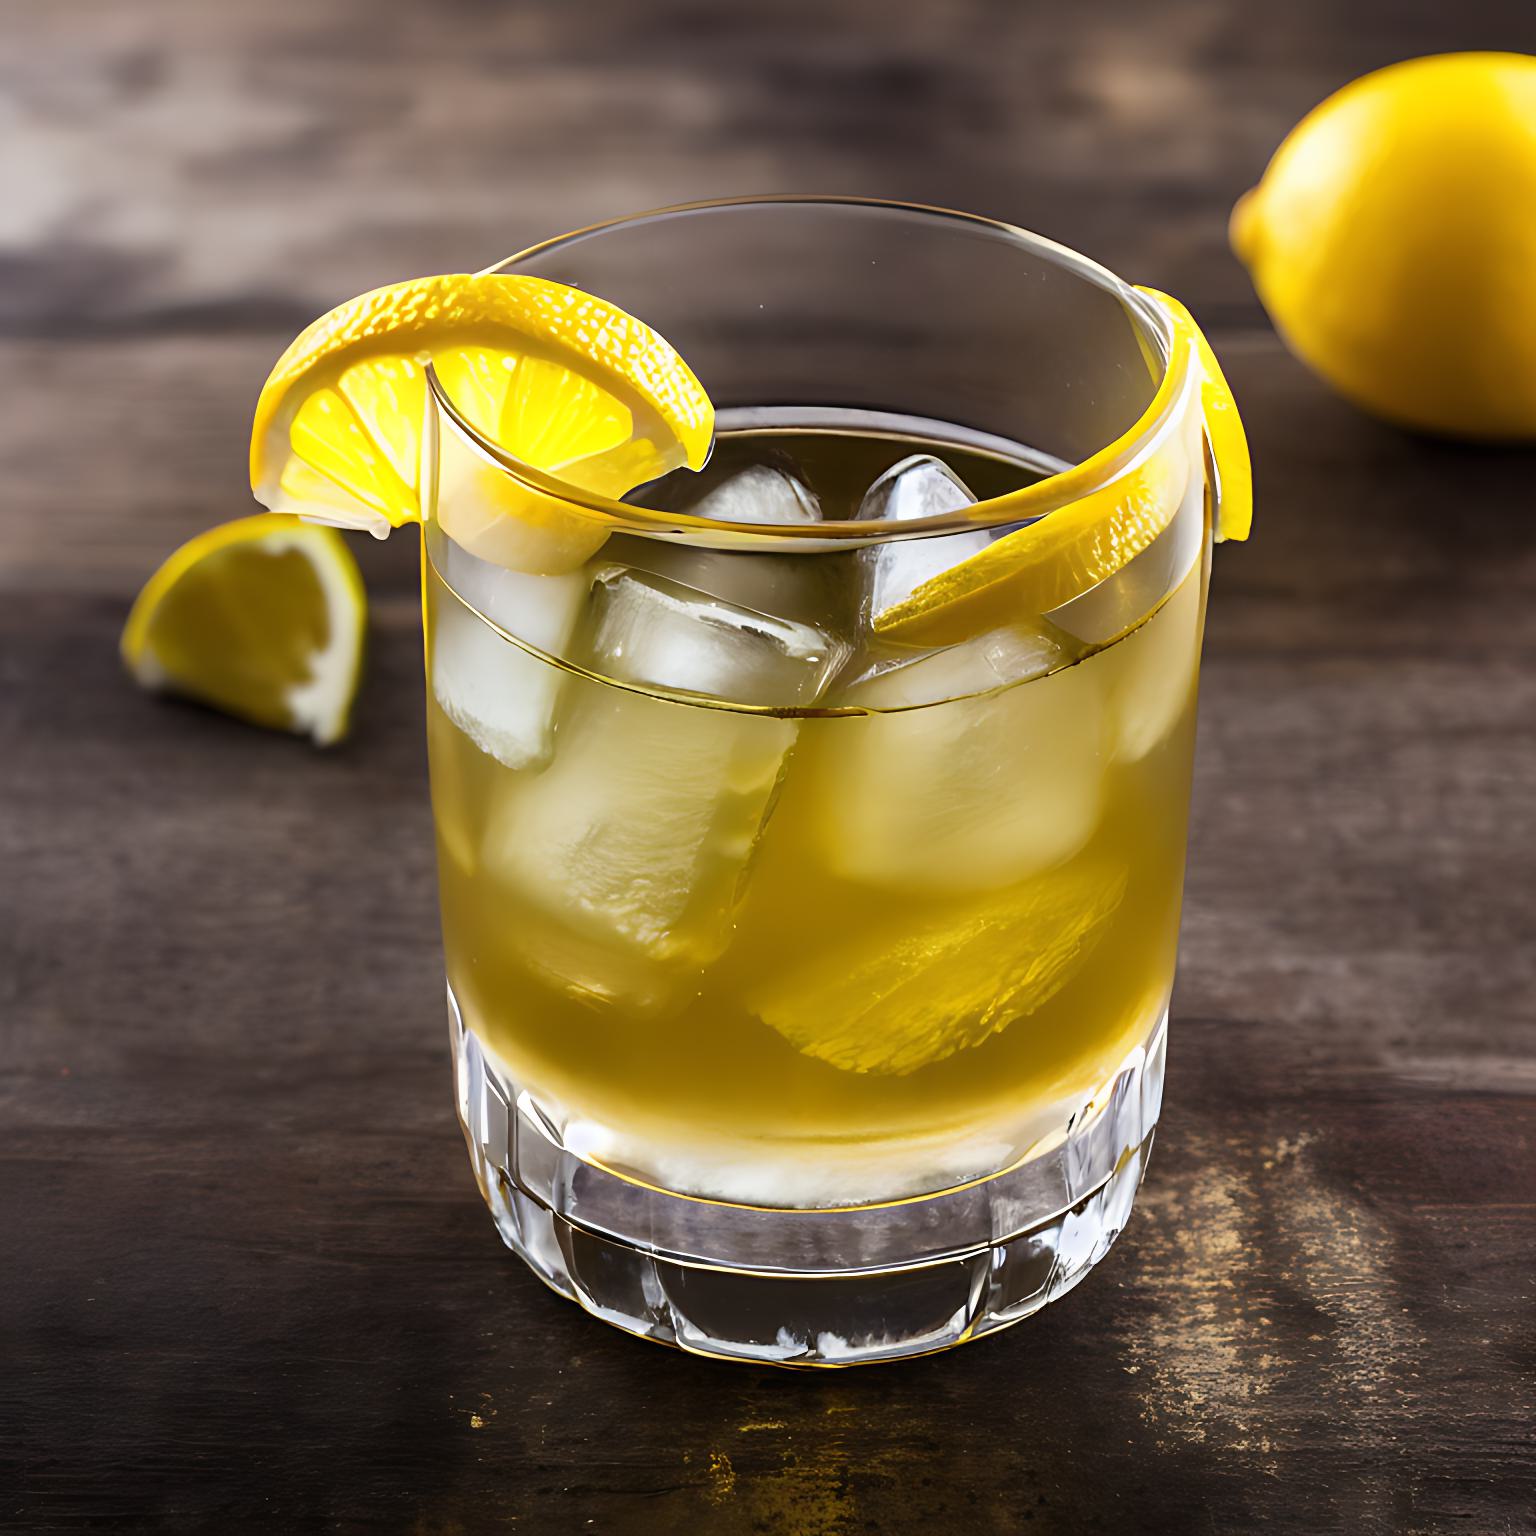 「REFLEXION」という名前のジンは、フルーティーな香りで檸檬と柚子の風味が特徴で、美しいイエローの色合いが目を引きます。「morning glow gin」は、ローズとラベンダーのフローラルな香りとバタフライピーの美しい青でリラックス出来るジンです。柑橘果汁で青から紫色へとグラデーションも楽しめます。ジン カクテル ジン アルコール度数 ジン アメリカ おすすめ ジン 味わい チョコレート チューハイ 度数 栄養 二日酔い フィズ フルーティー フランス 原料 グラス グレープフルーツジュース ハイボール ジンジャエール 蒸留酒 ジュース割 高級 お酒 おすすめ オレンジジュース 美味しい 飲み方 お湯割り おつまみ 酒 コーラ ロック ソーダ割 糖質 炭酸割り 梅酒 ウオッカ カクテル ウィルキンソン 割り方